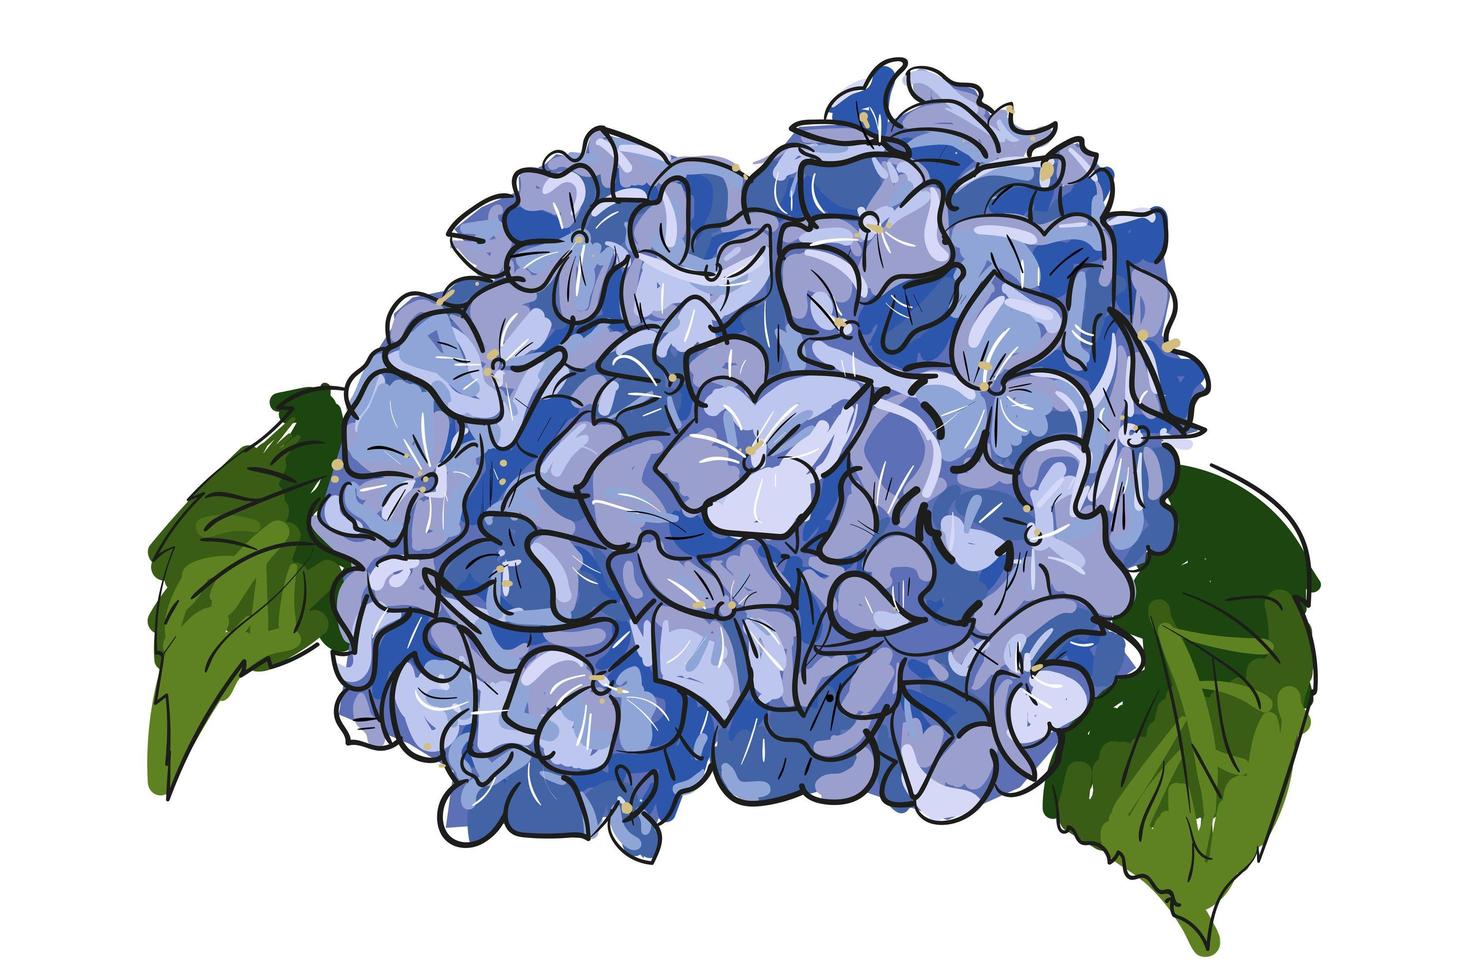 einzelne Hand gezeichnete blaue lila Hortensie auf weißem Hintergrund. blühende hortensie der sommerweinlese, botanische natürliche hortensieillustration der schönen blume der handzeichnung vektor